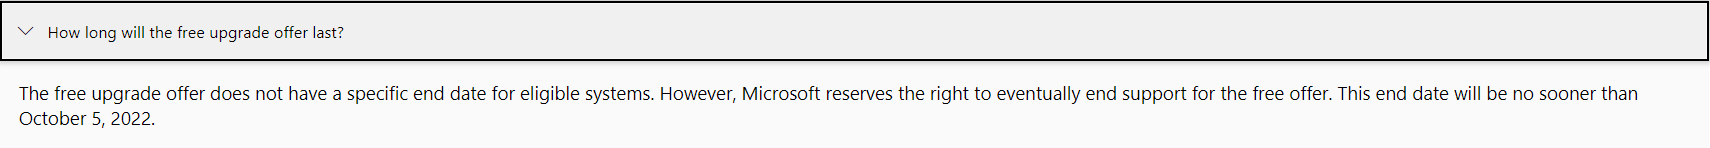 Es posible que Windows 11 no sea una actualización gratuita por mucho tiempo, ya que la oferta podría finalizar a mediados de 2022